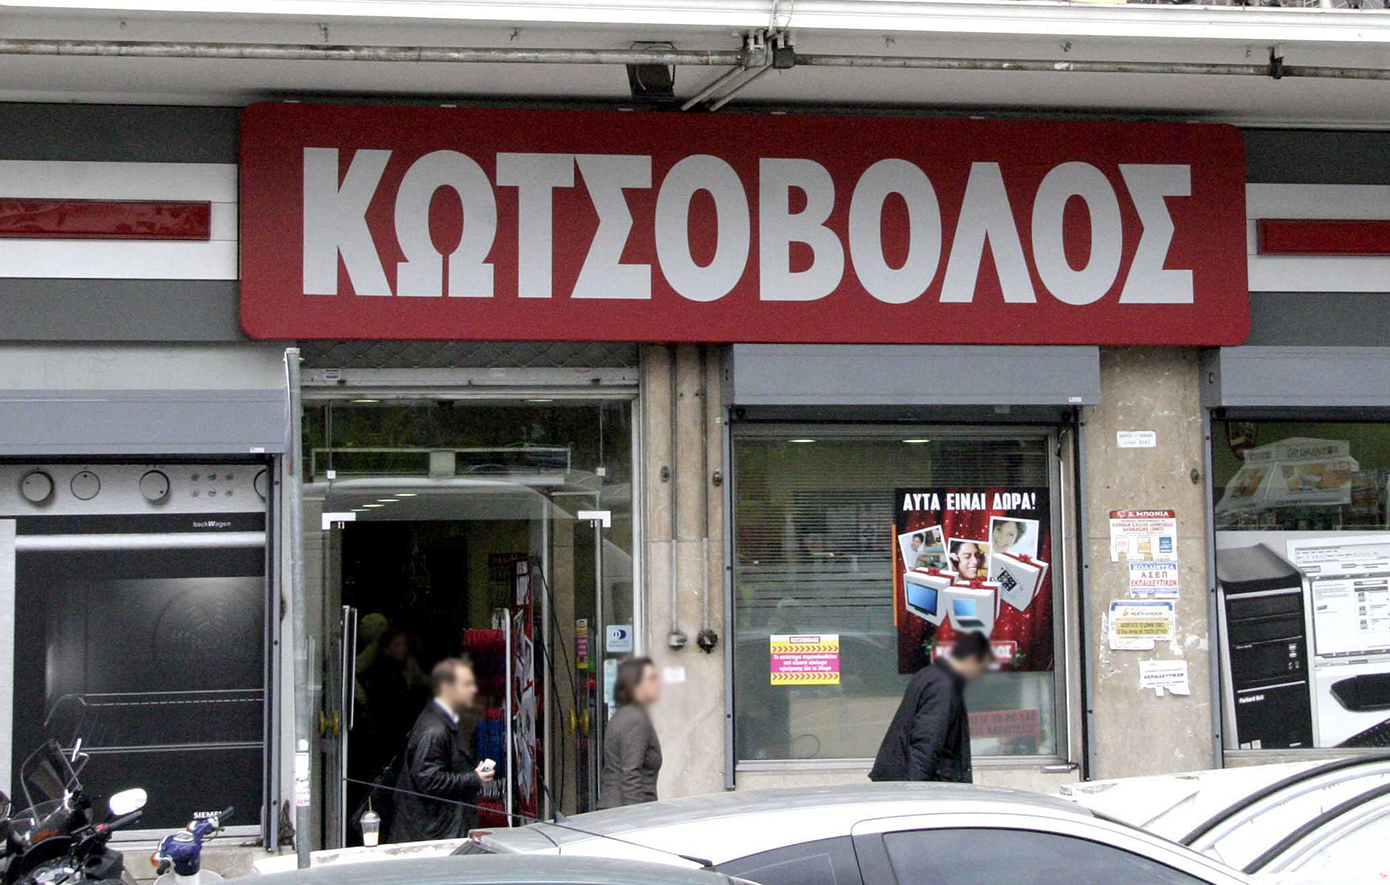 Η στρατηγική κίνηση της ΔΕΗ με την εξαγορά της Κωτσόβολος &#8211; Σε ελληνικά χέρια ξανά ύστερα από 19 χρόνια η αλυσίδα ηλεκτρικών